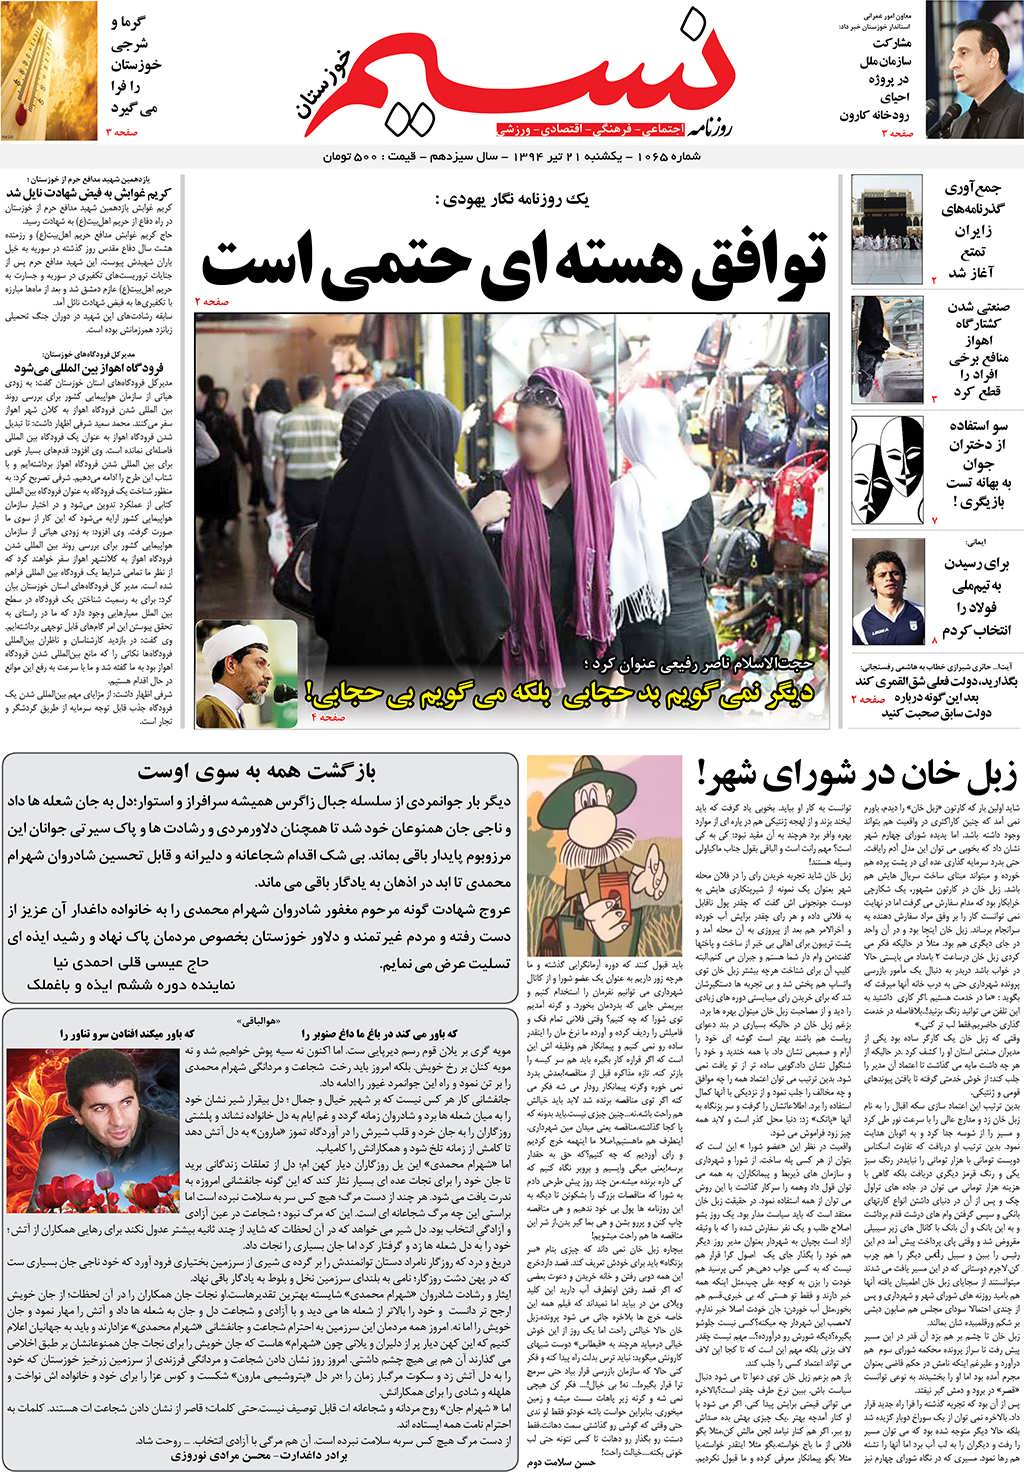 صفحه اصلی روزنامه نسیم شماره 1065